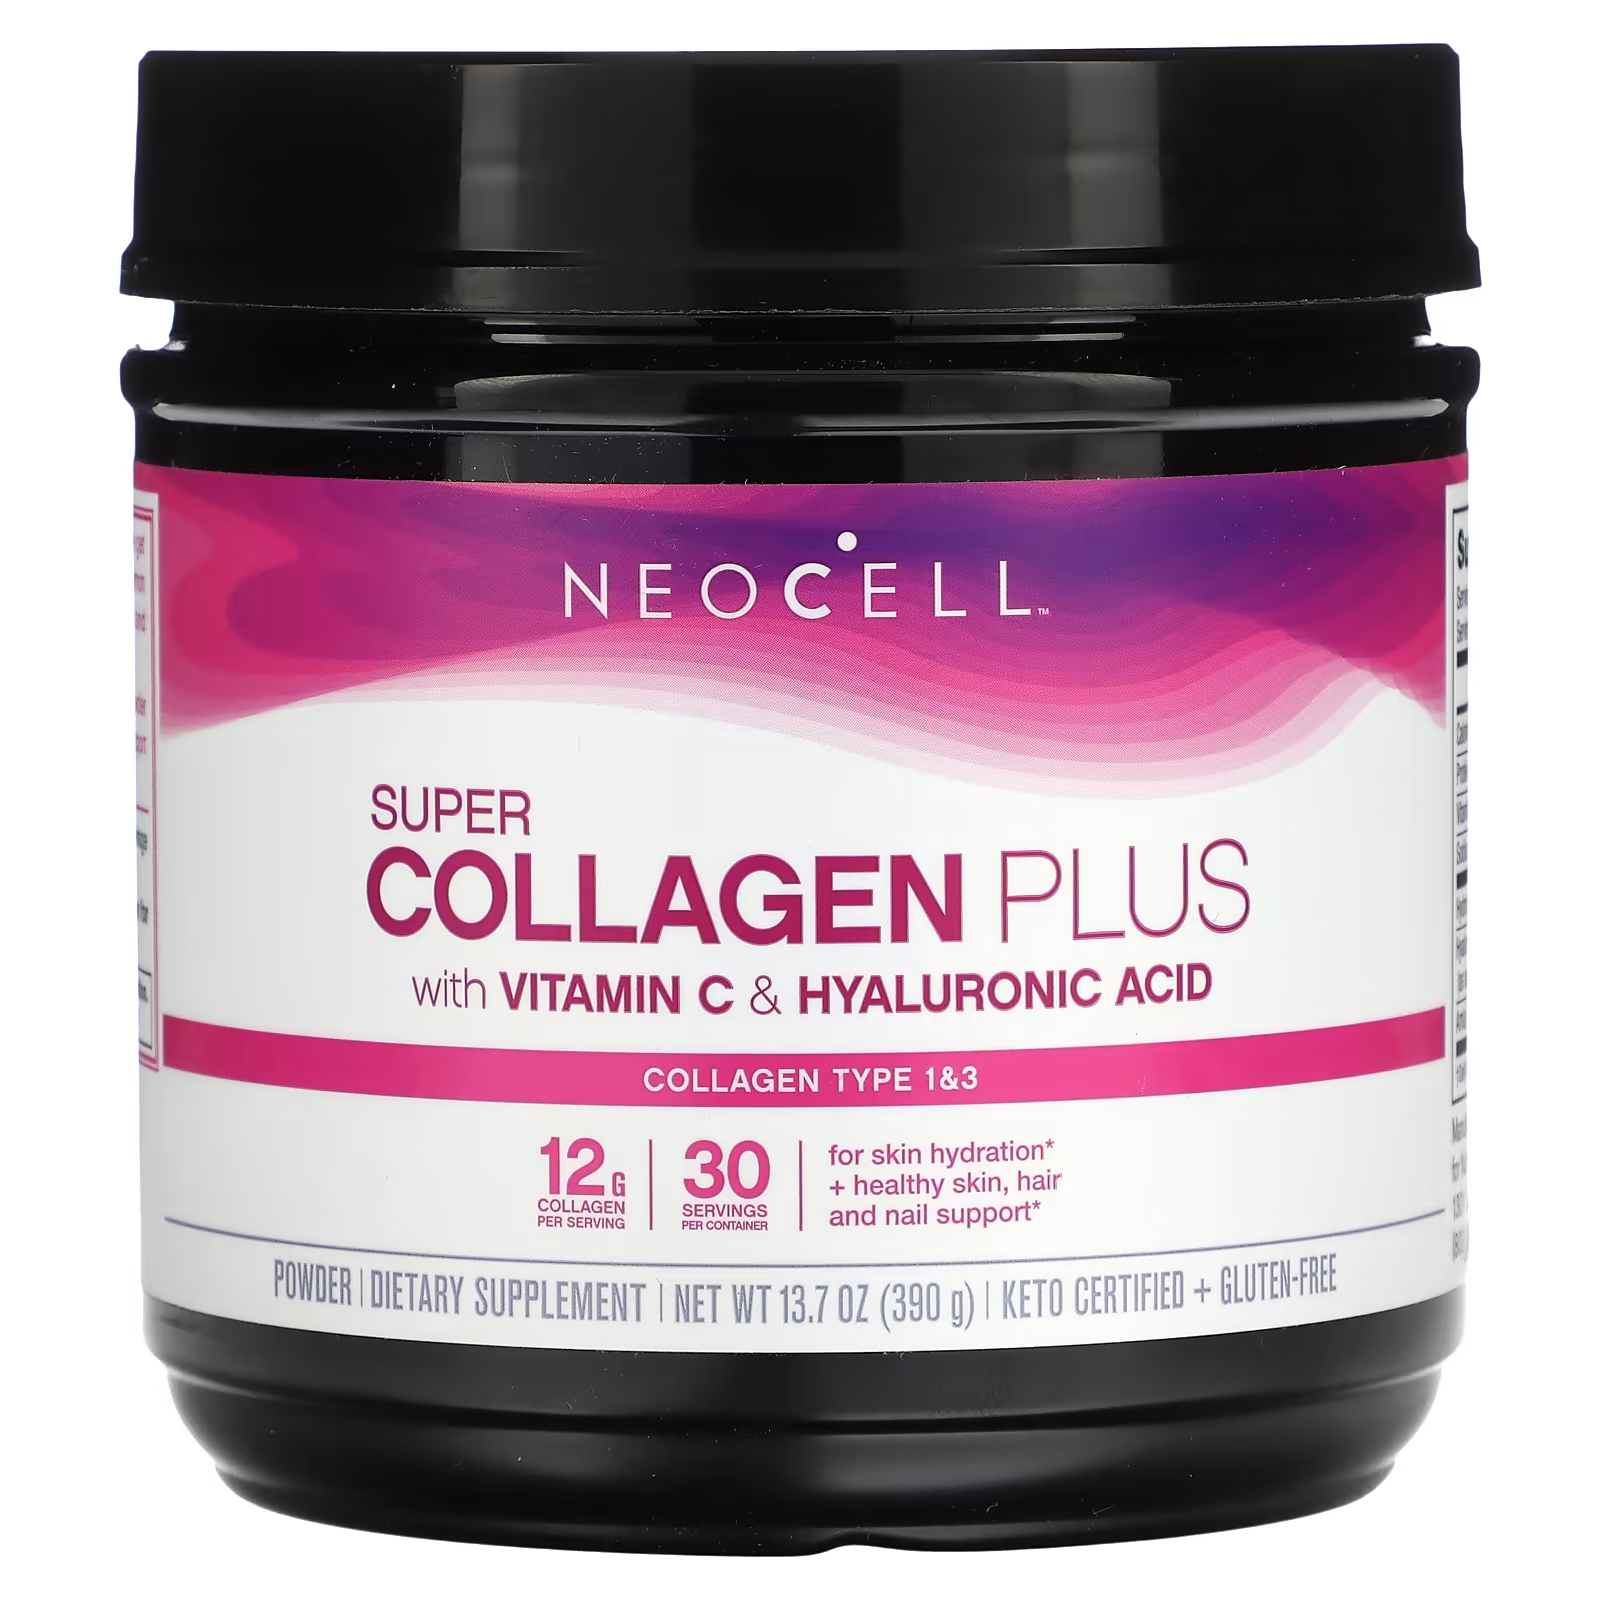 Пищевая добавка NeoCell Super Collagen Plus с витамином C и гиалуроновой кислотой, 390г neocell super collagen plus коллаген с витамином c и гиалуроновой кислотой 195 г 6 9 унции